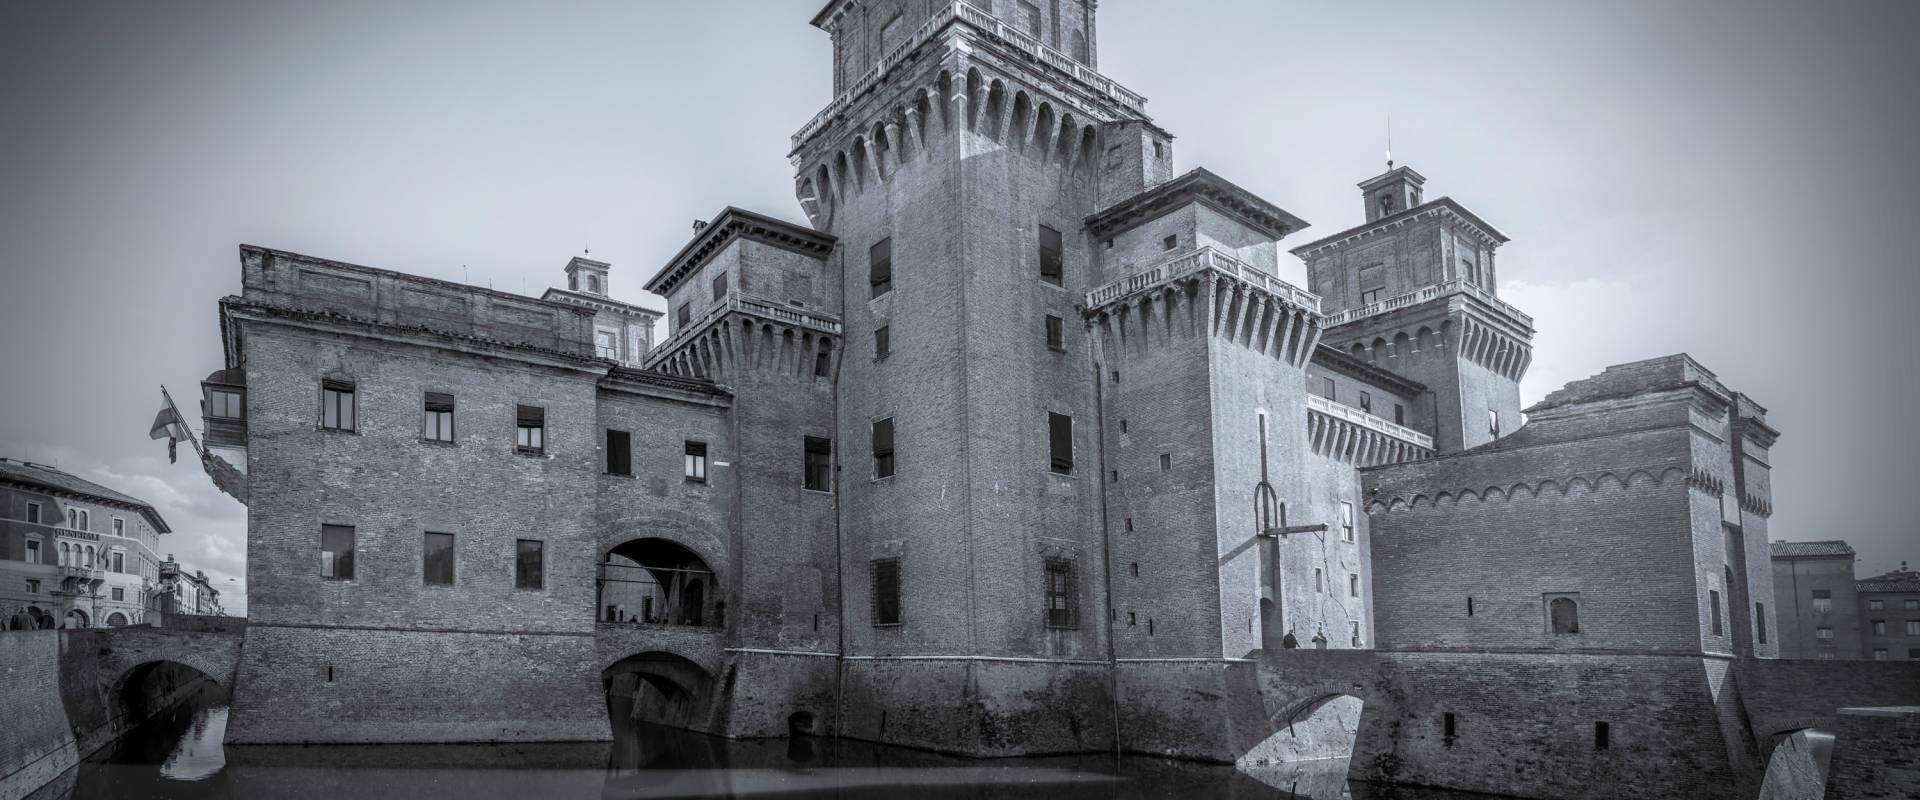 Castello Estense --- Ferrara foto di Vanni Lazzari